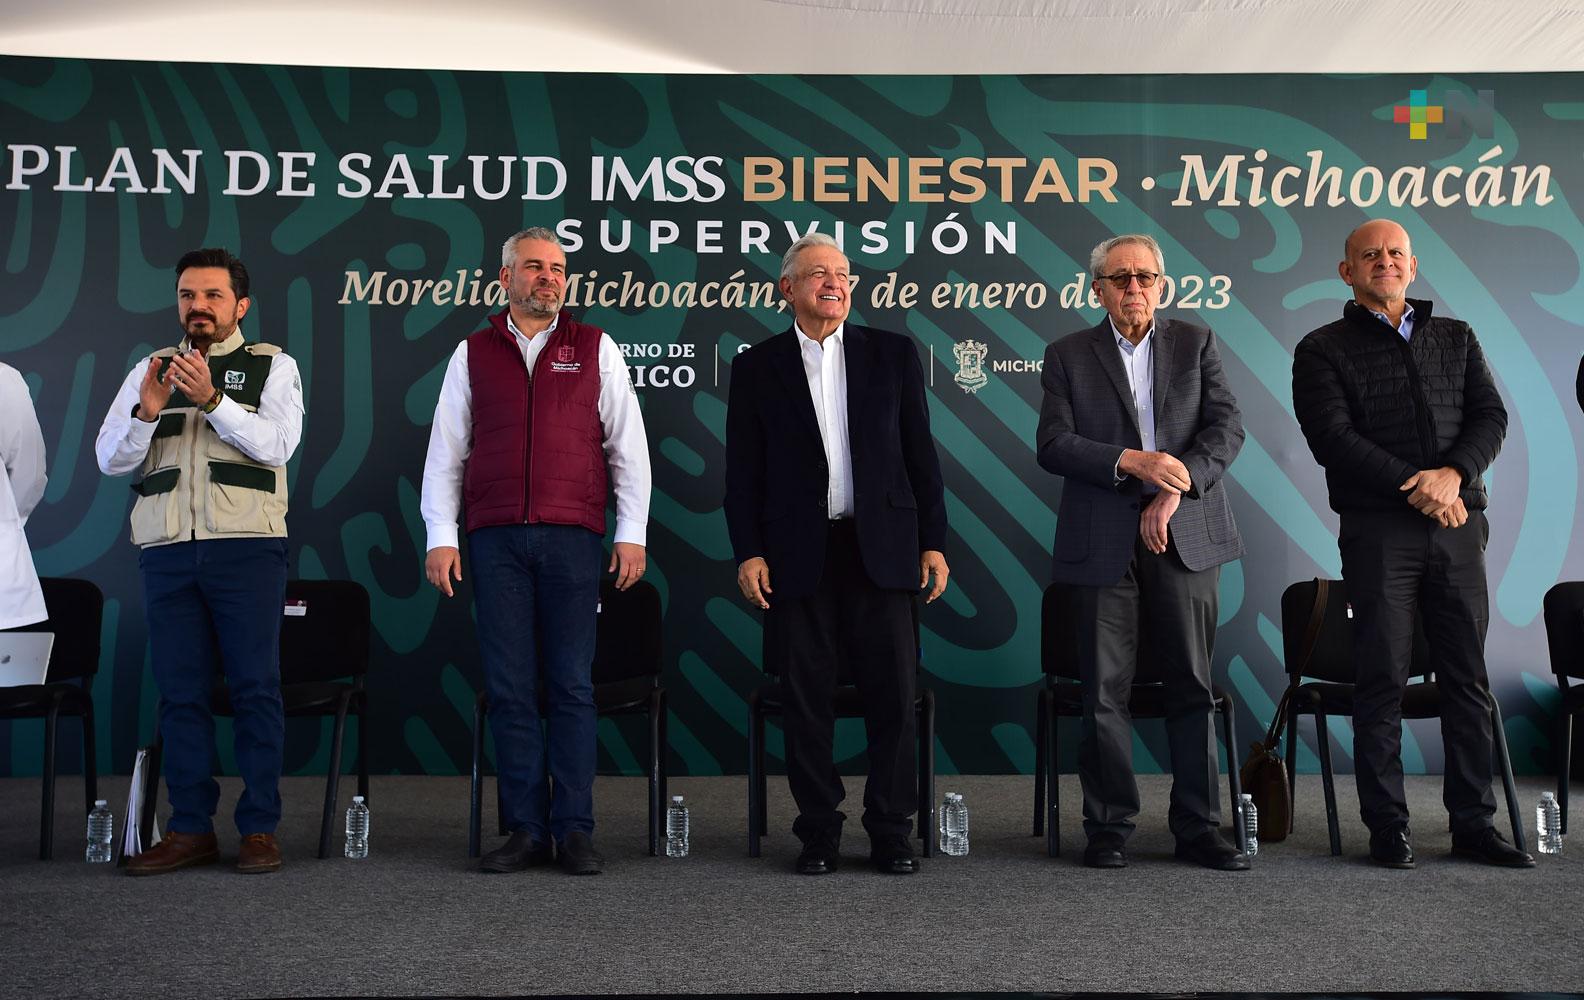 Michoacán, décimo estado incorporado al Plan de Salud IMSS Bienestar